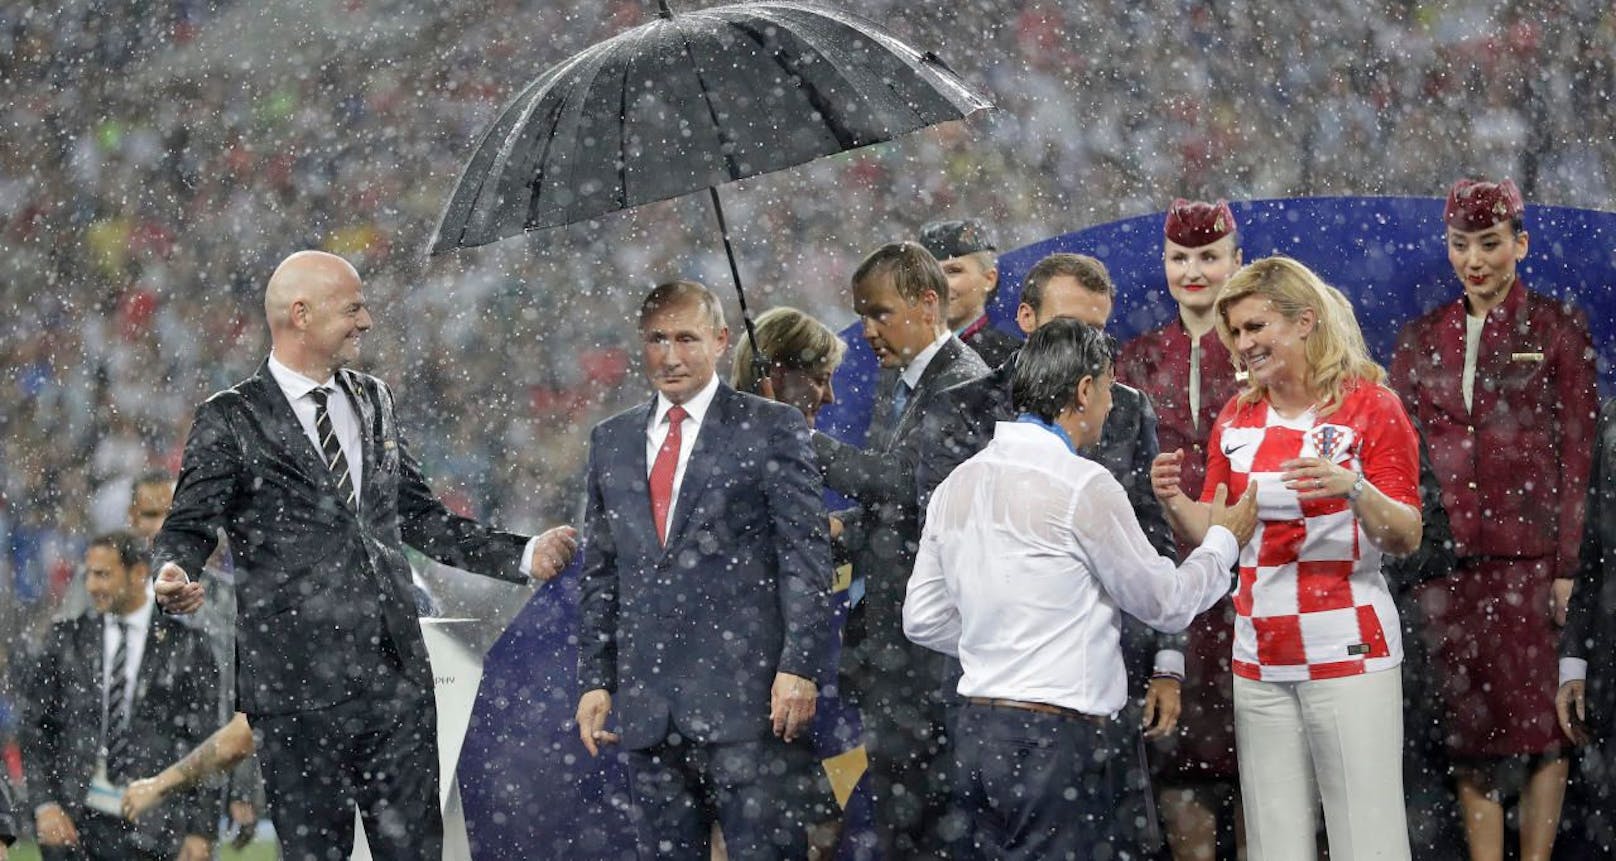 Skurill: Putin steht unter einem Schirm, alle anderen werden klitschnass.